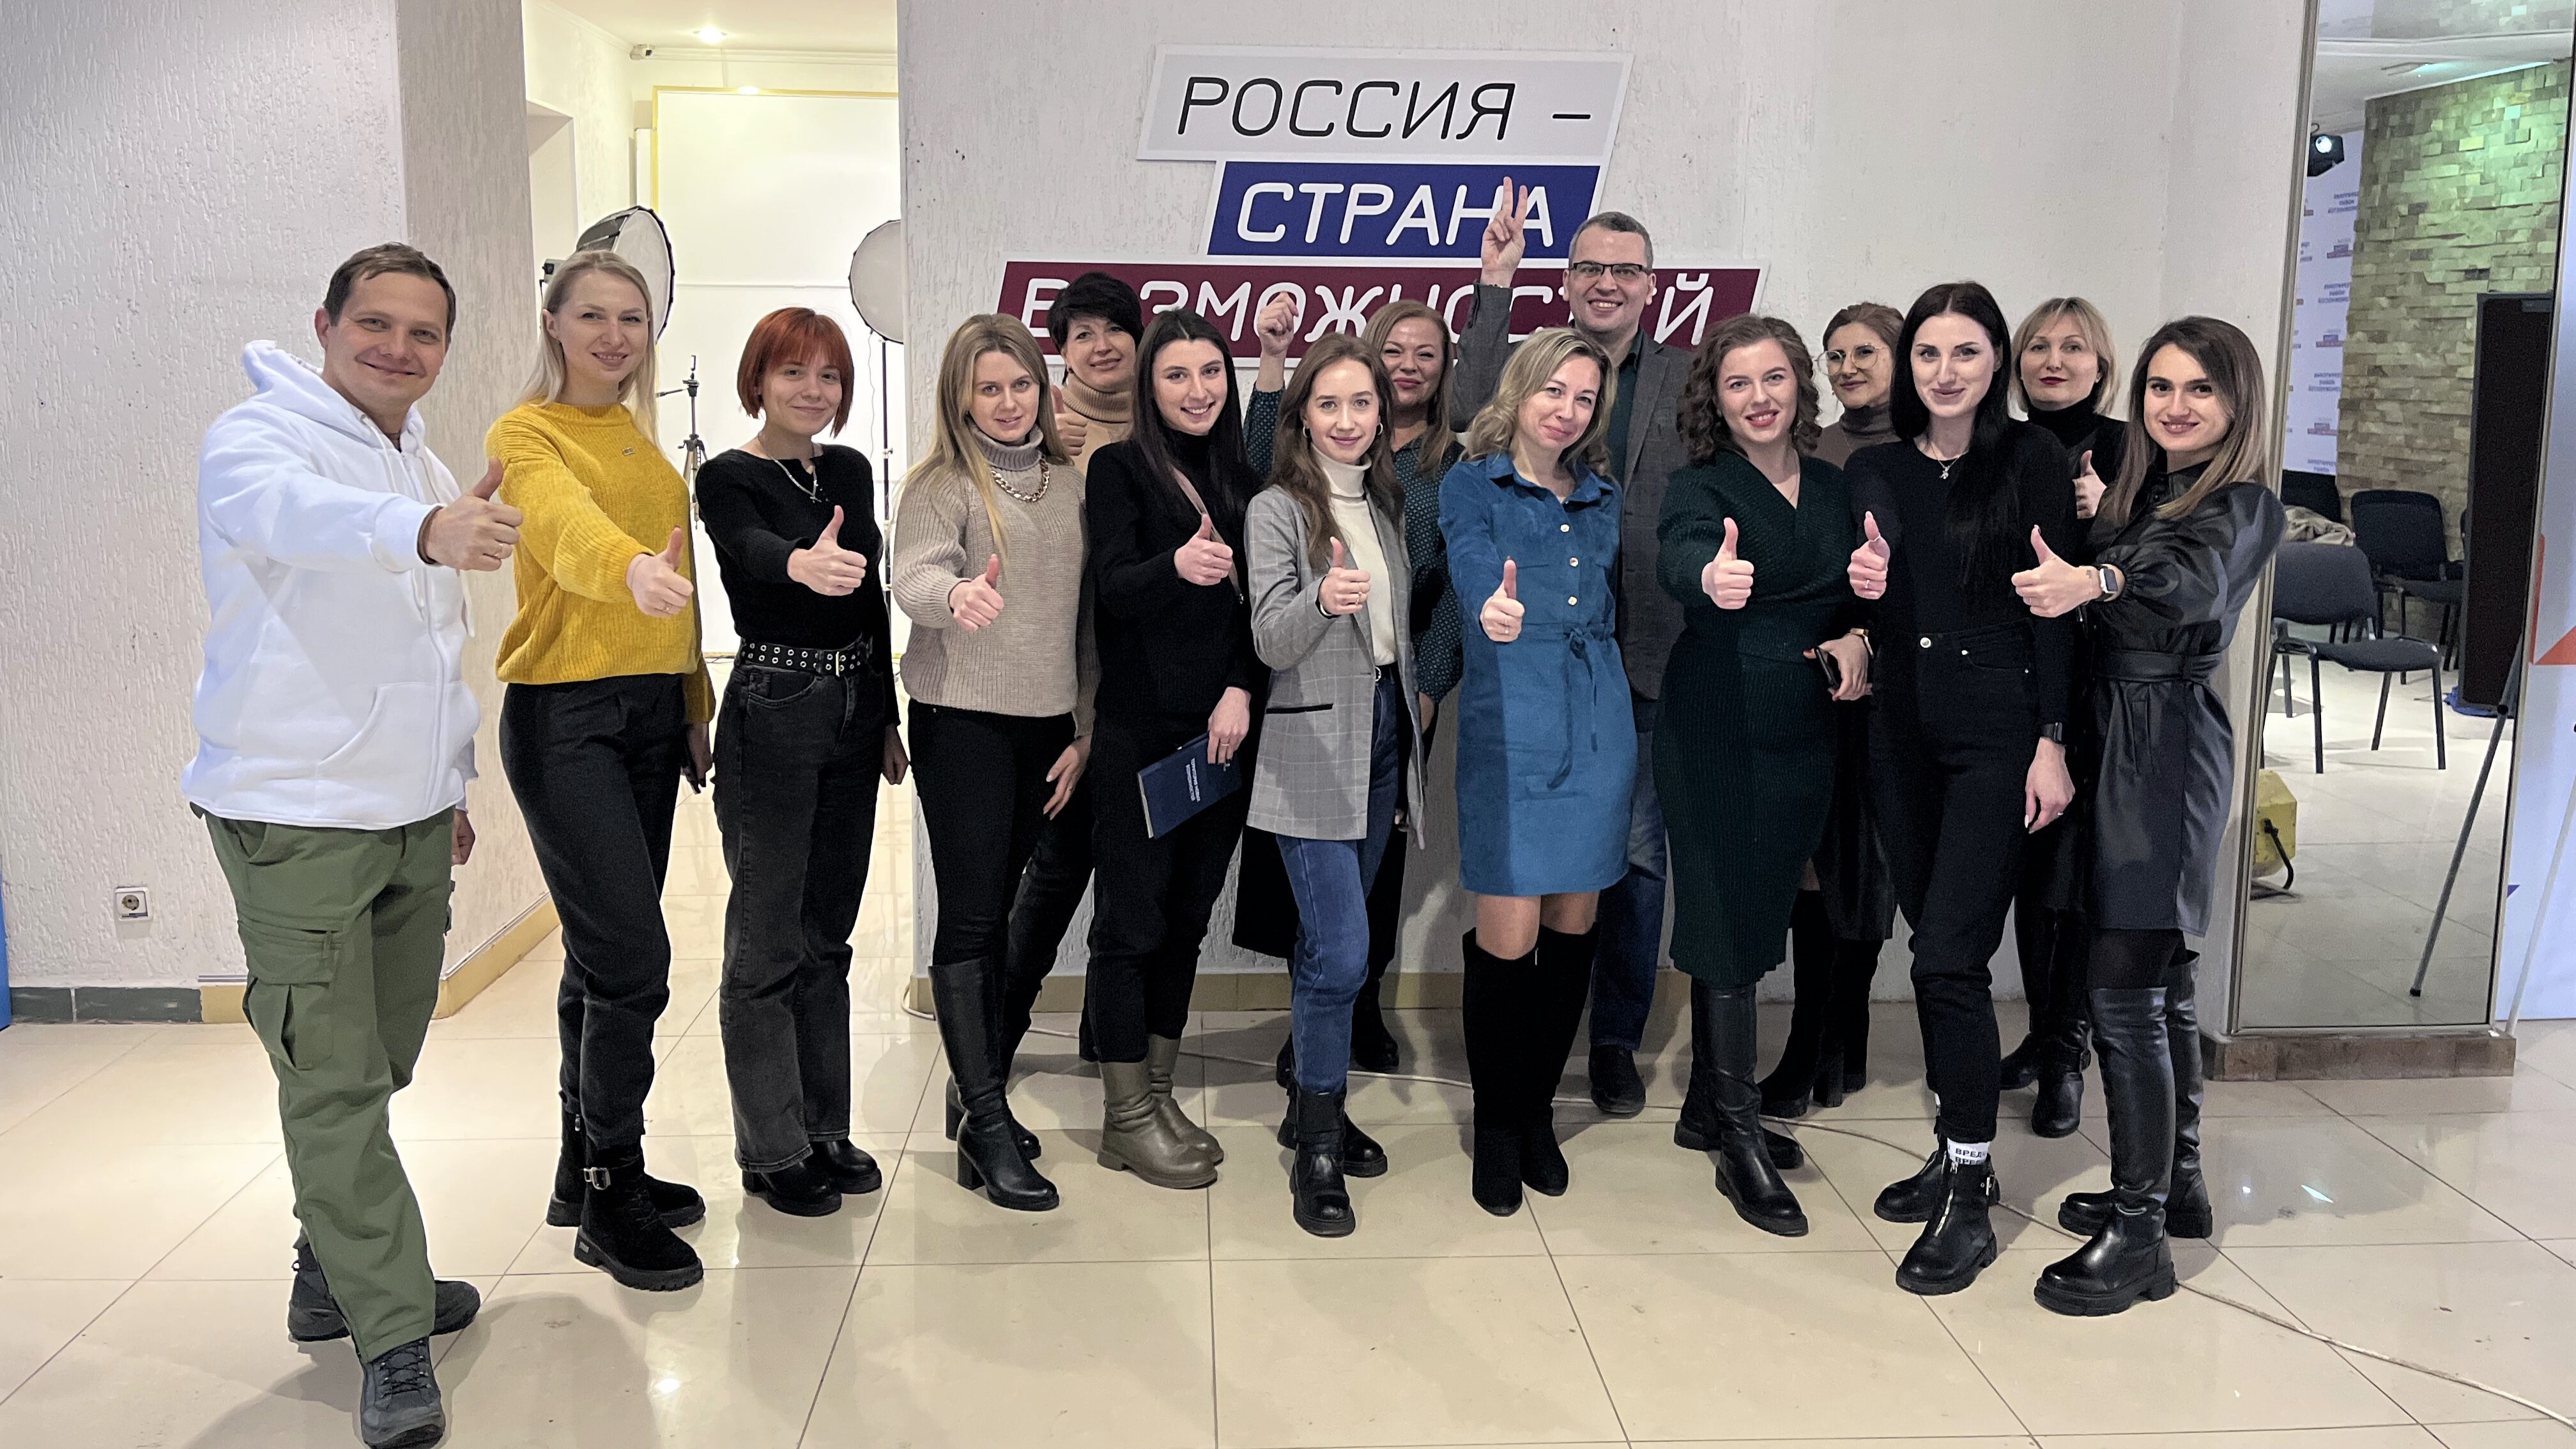 «Россия – страна возможностей» провела образовательный интенсив для сотрудников пресс-служб Луганской Народной Республики